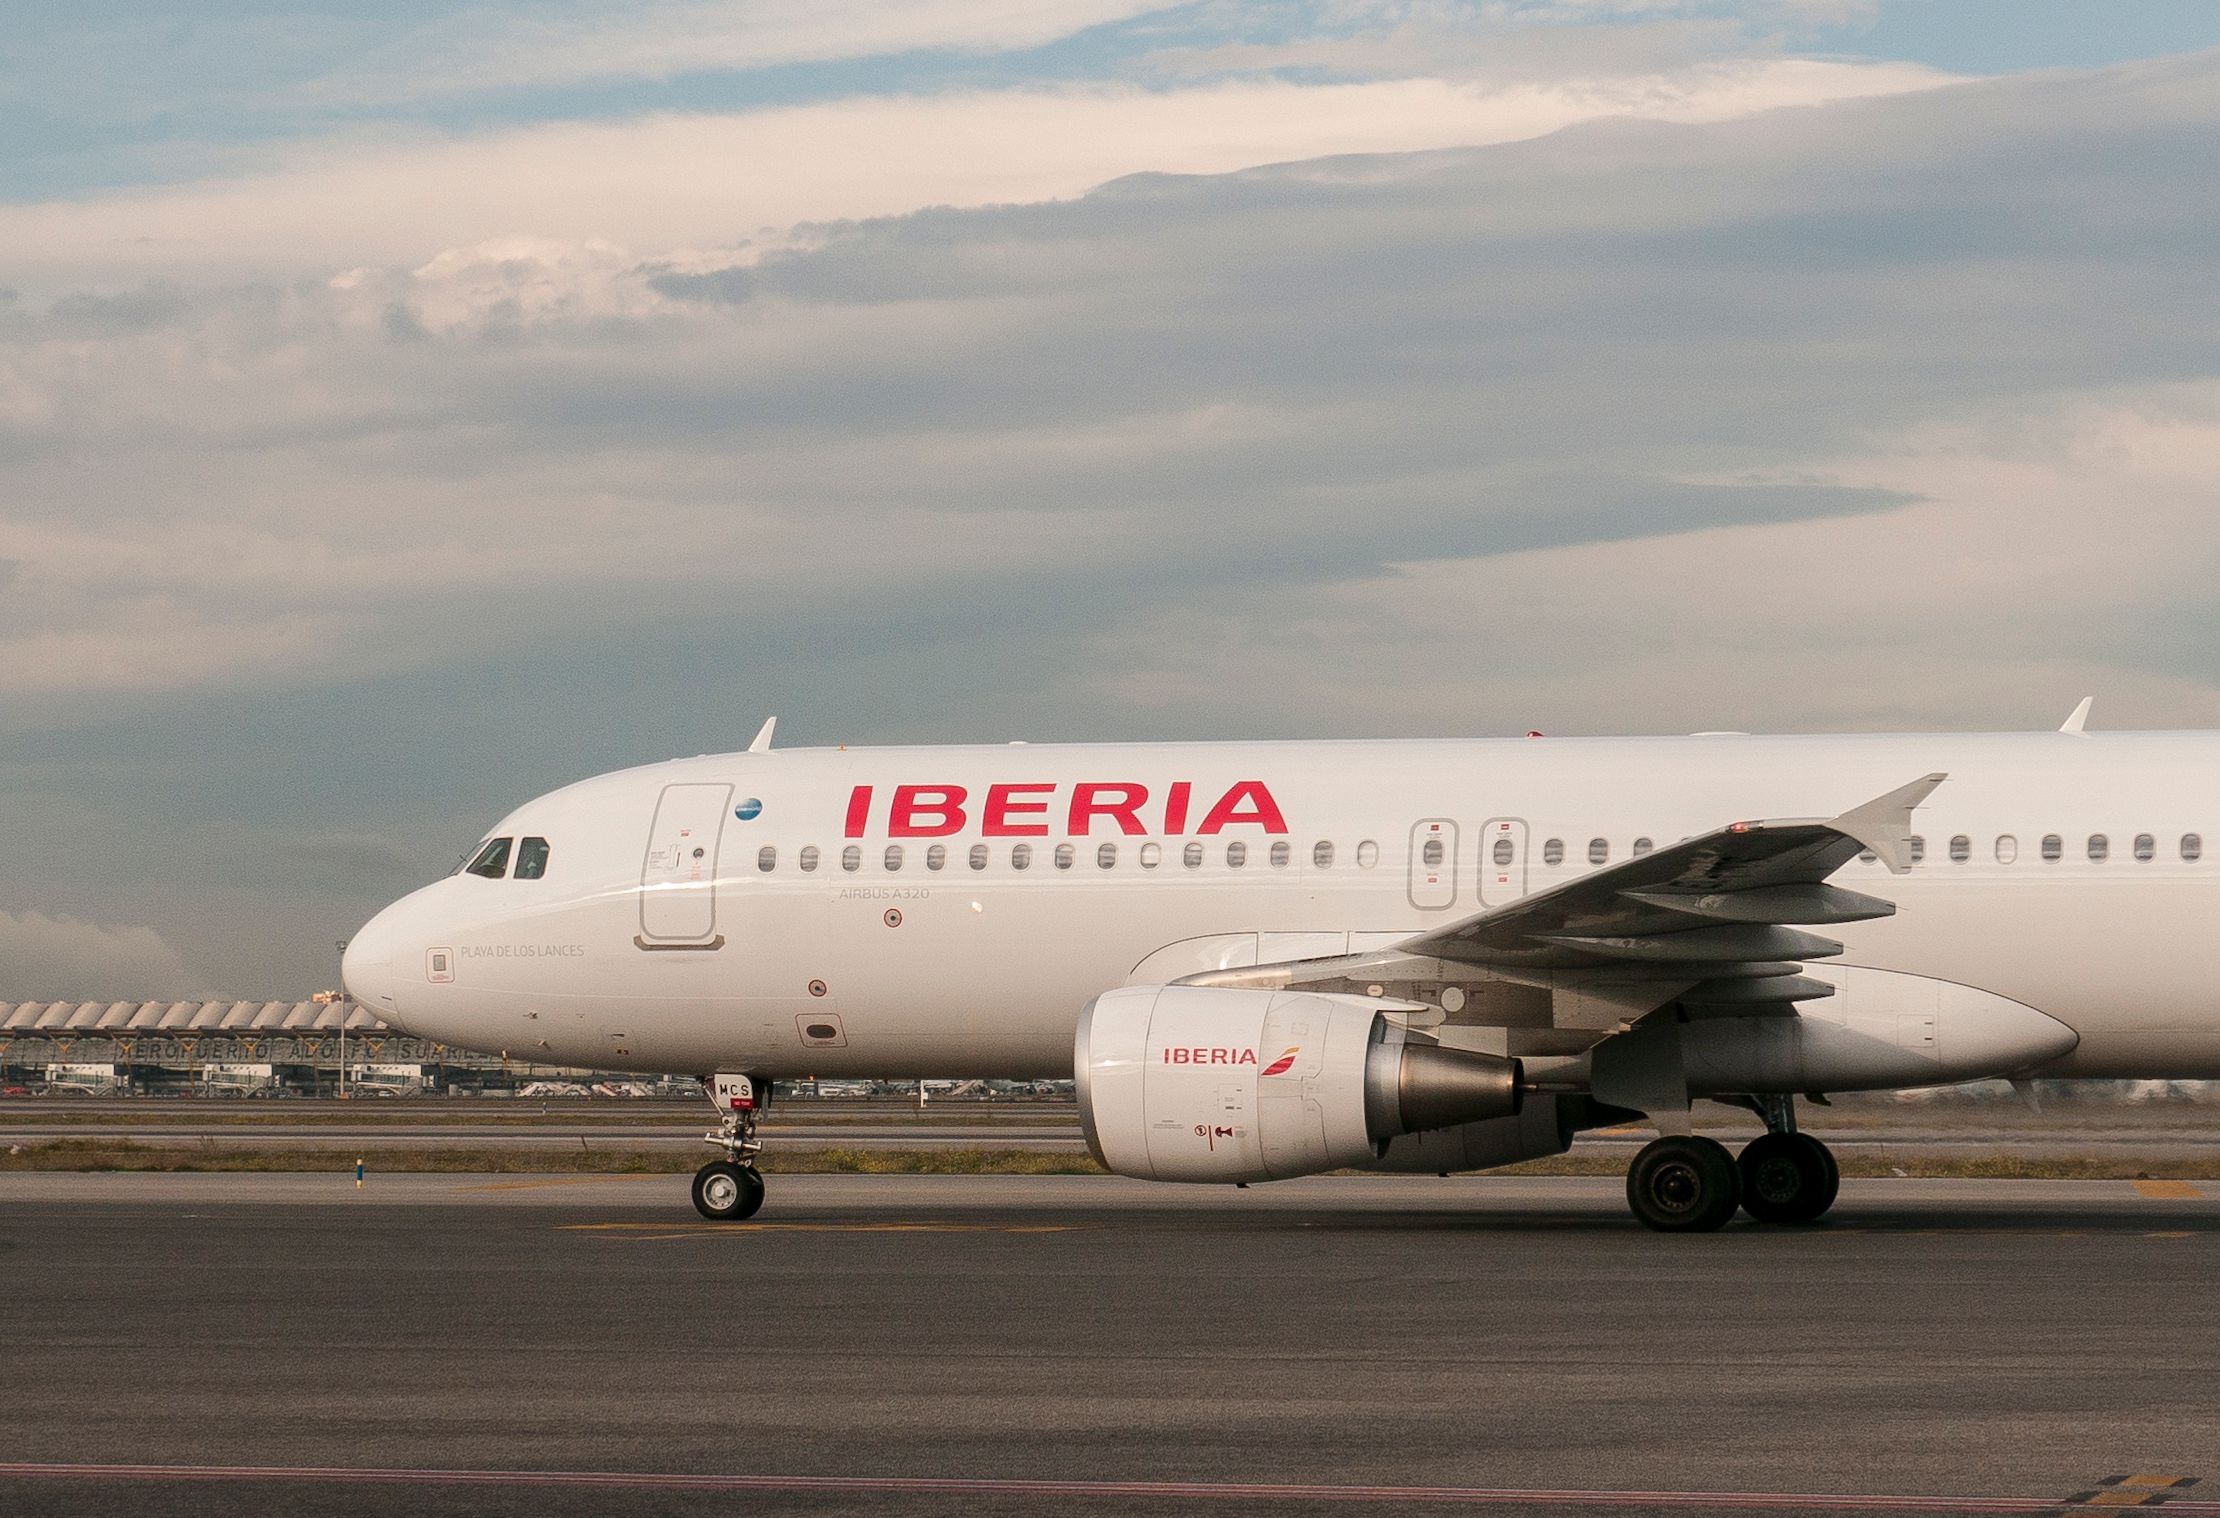 An Iberia aircraft